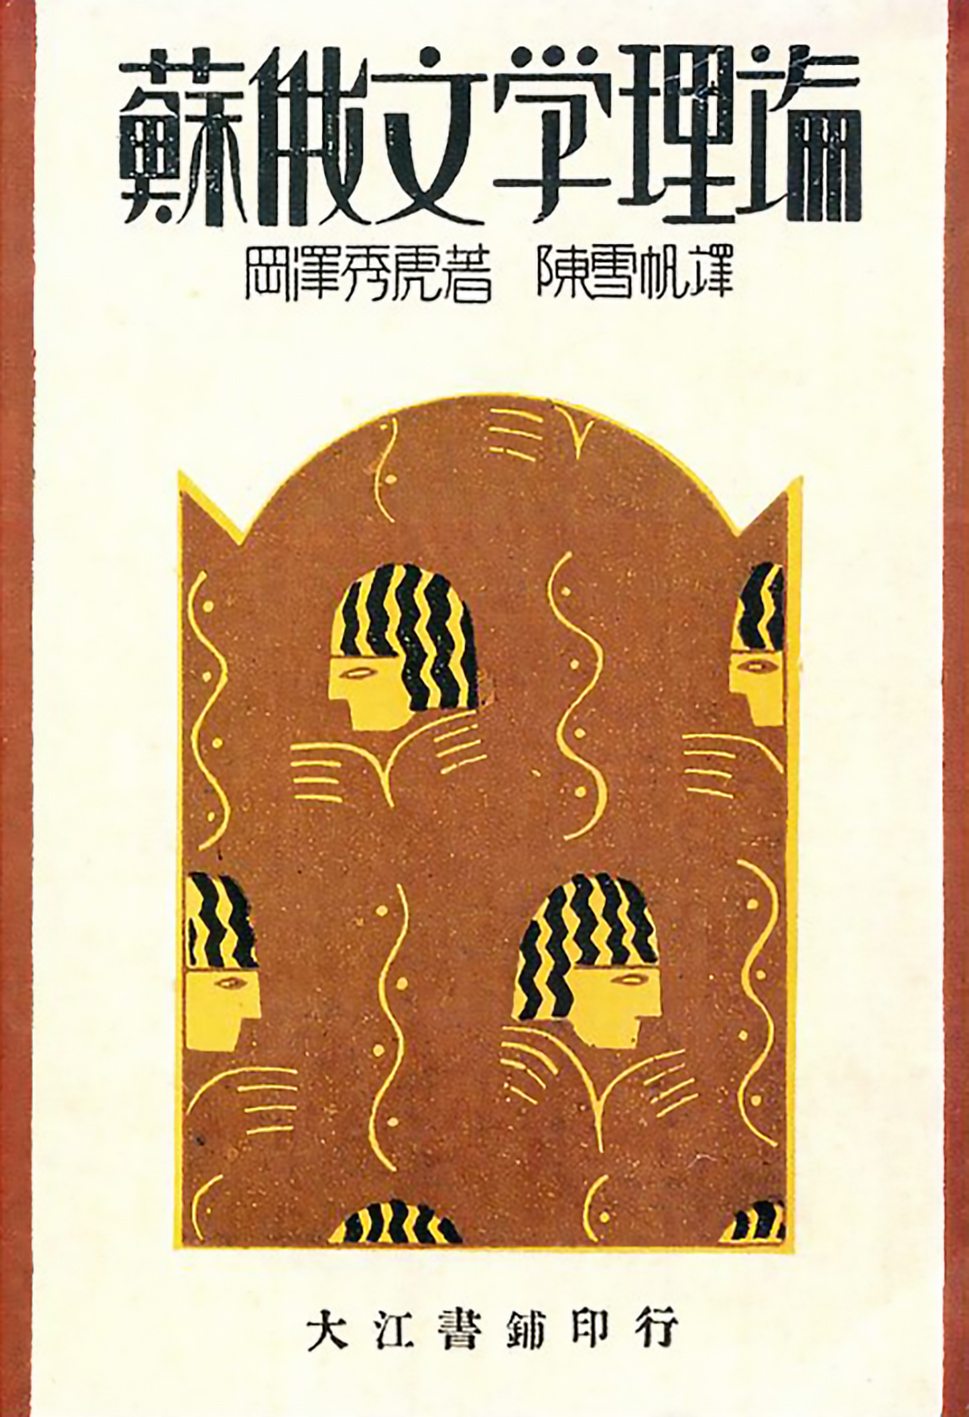 图14《苏俄文学理论》冈泽秀虎著，陈雪帆译，大江书铺，1931年